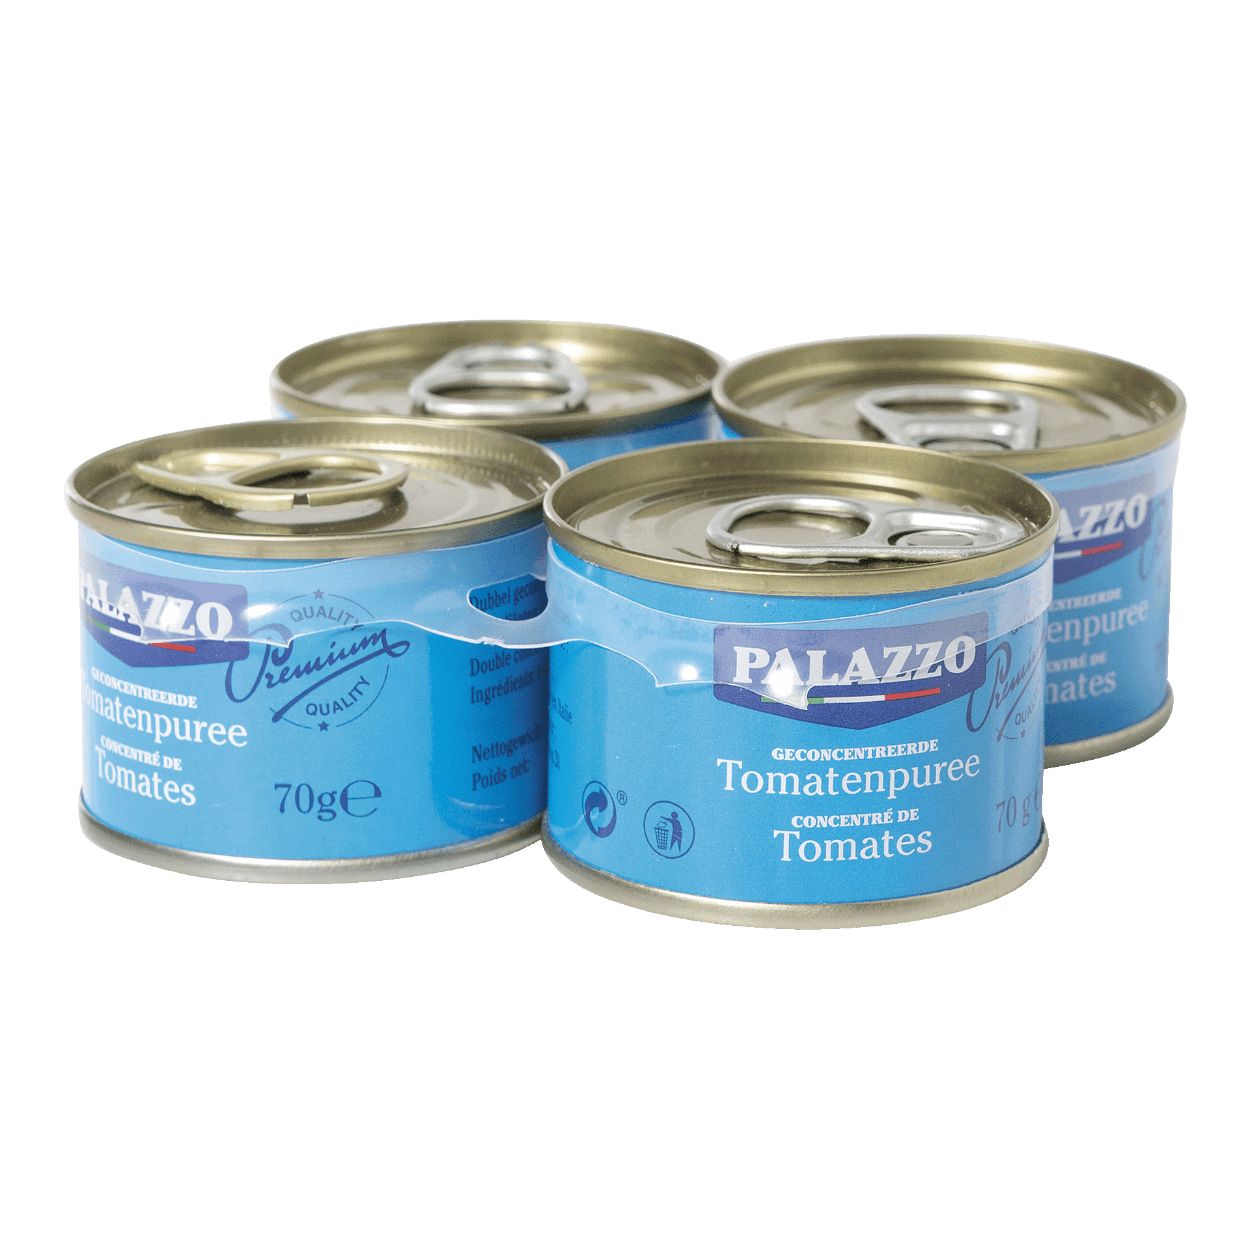 PALAZZO® Concentré de tomates premium bon marché chez ALDI